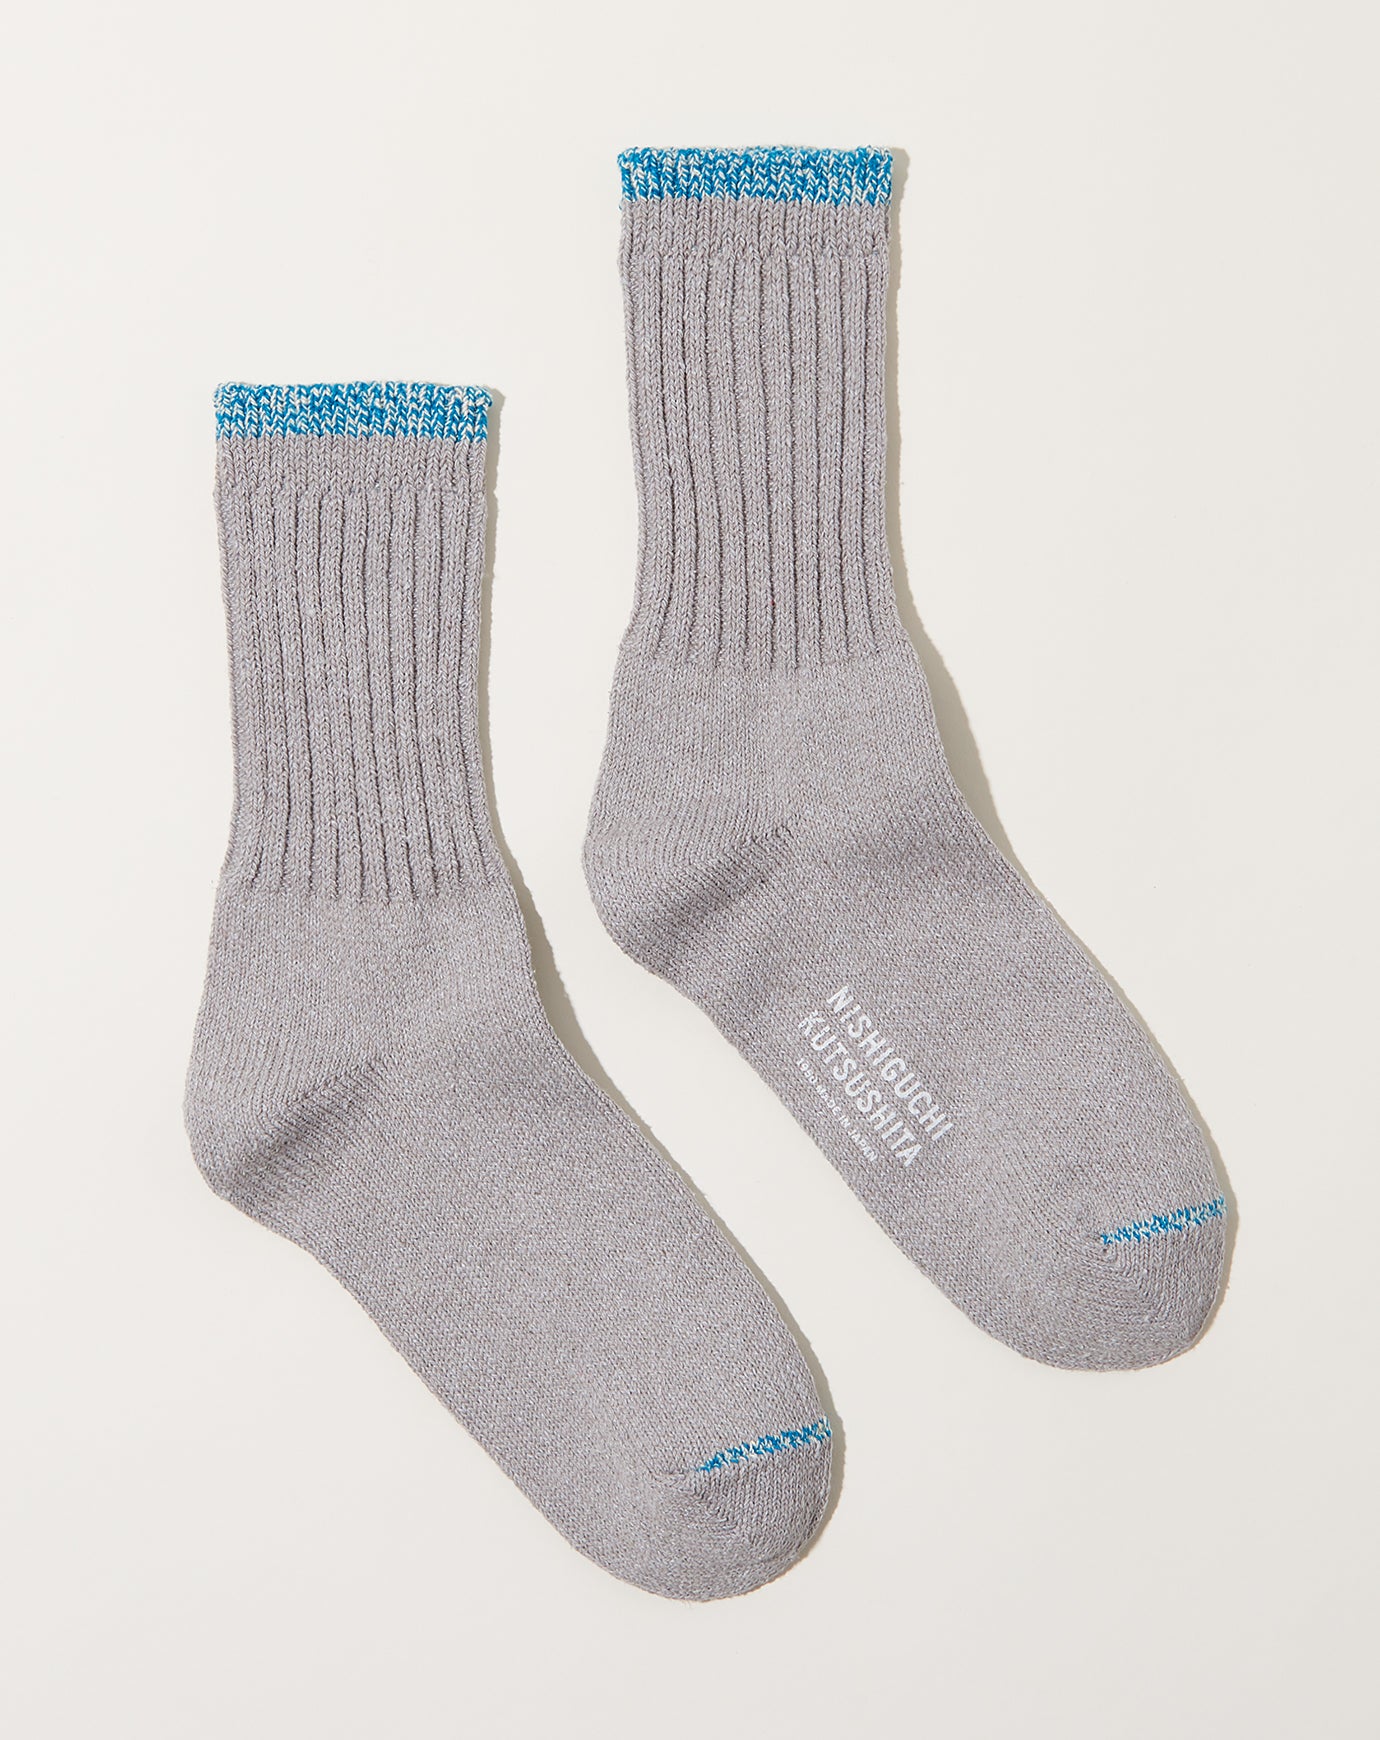 Nishiguchi Kutsushita Silk Cotton Socks in Light Grey